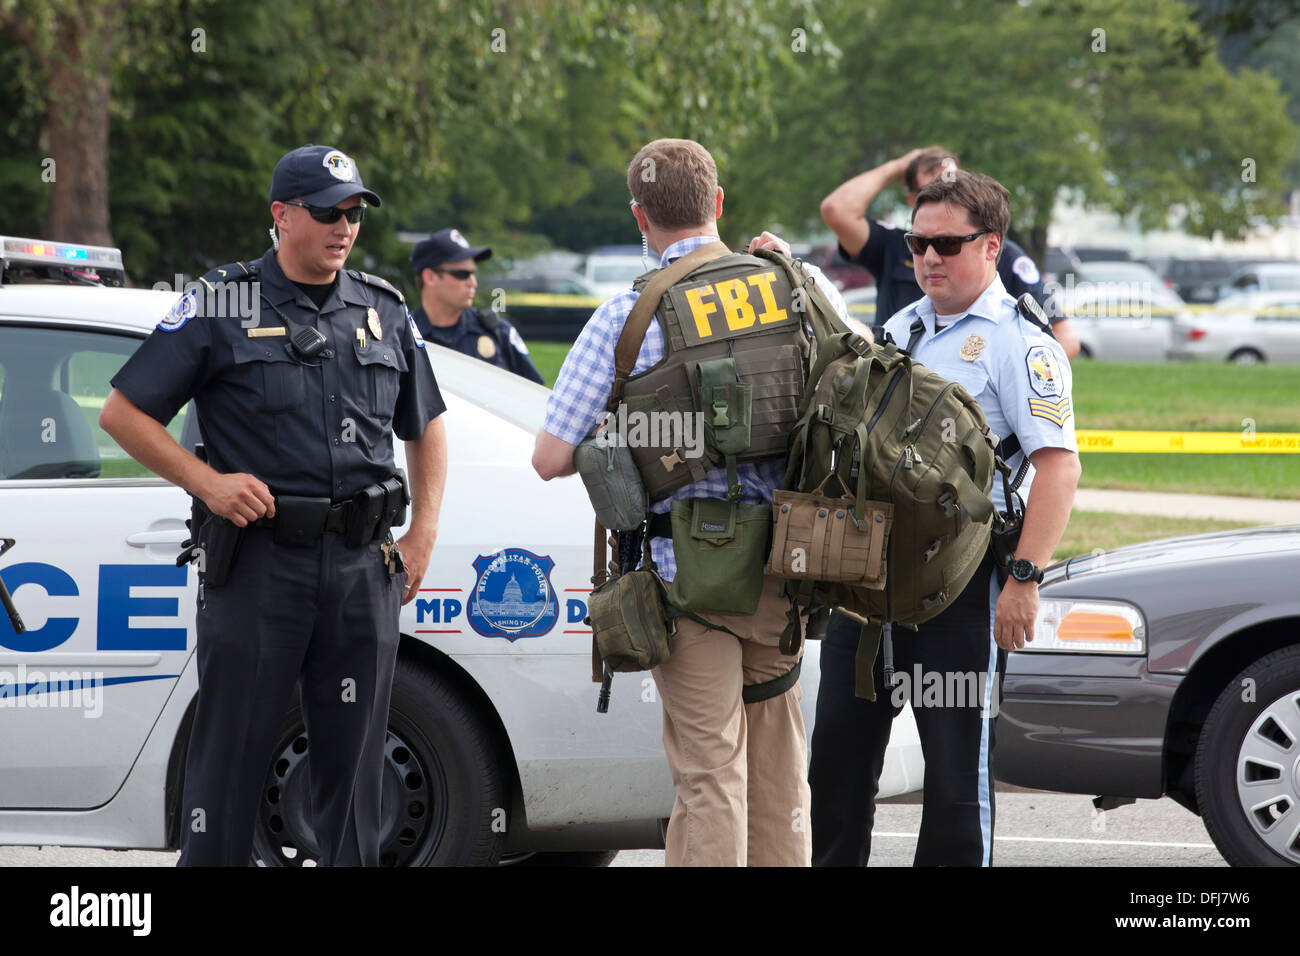 Agente del FBI en la escena del crimen - Washington, DC, EE.UU. Foto de stock